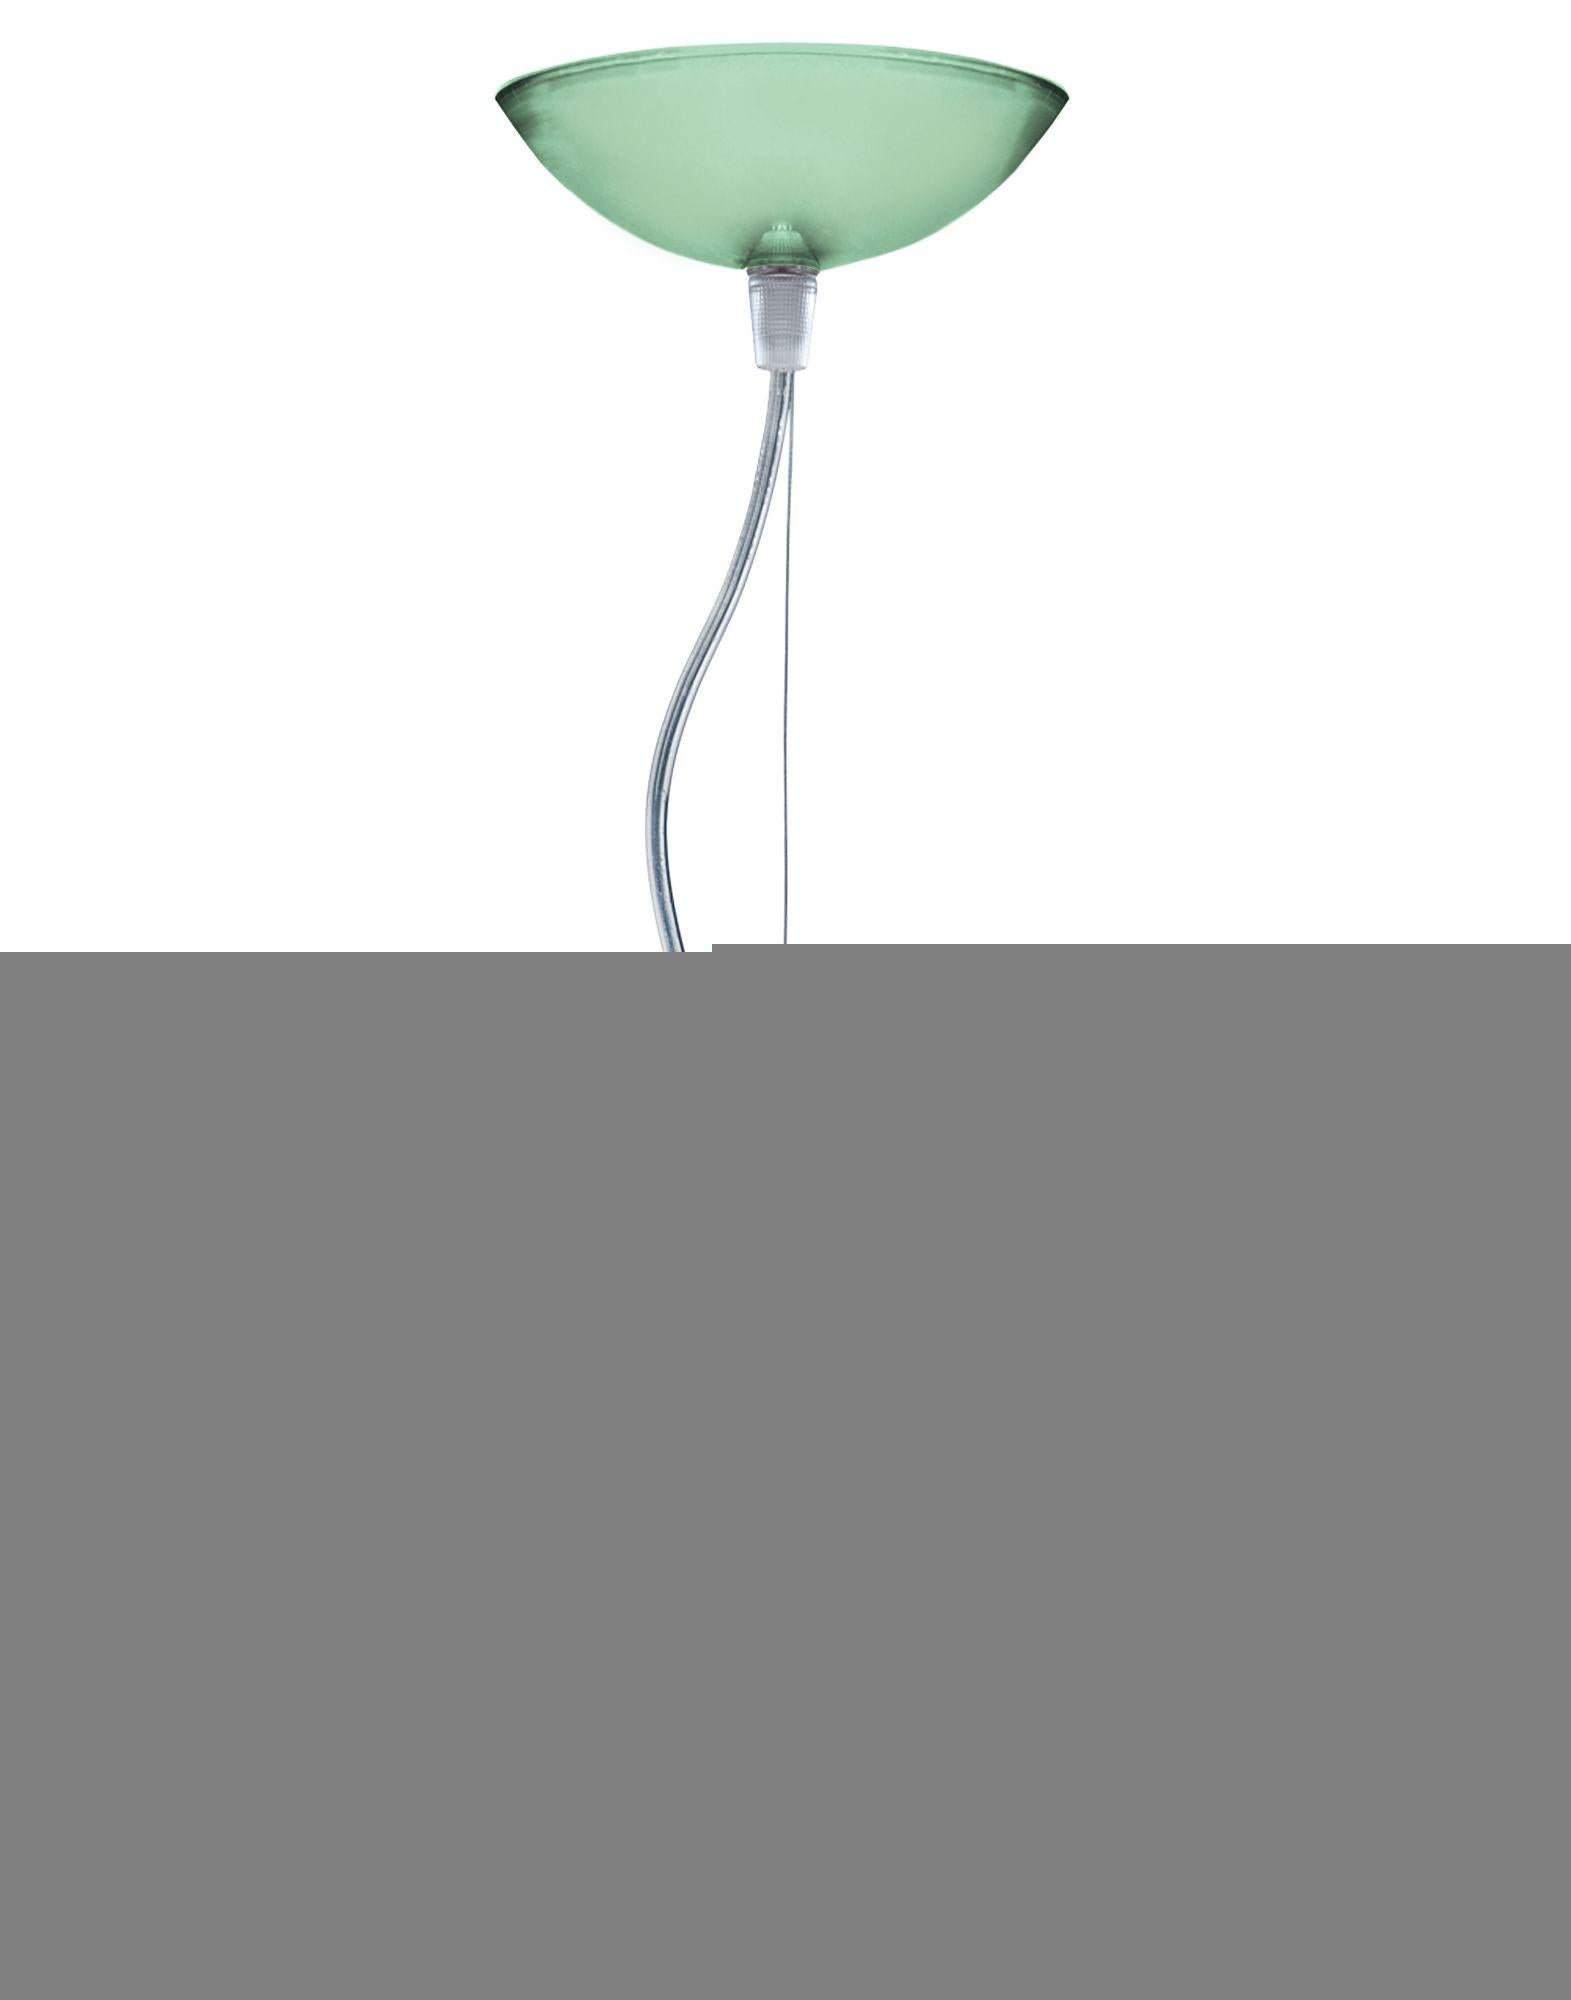 Suspension FL/Y de petite taille en vert Sage. Il s'agit d'une collection de lampes suspendues conçue par Ferruccio Laviani en 2002.

Dimensions : Hauteur de l'abat-jour : 11 po ; diamètre : 15 po ; poids de l'unité : 1,08 kg. Fabriqué en : PMMA.